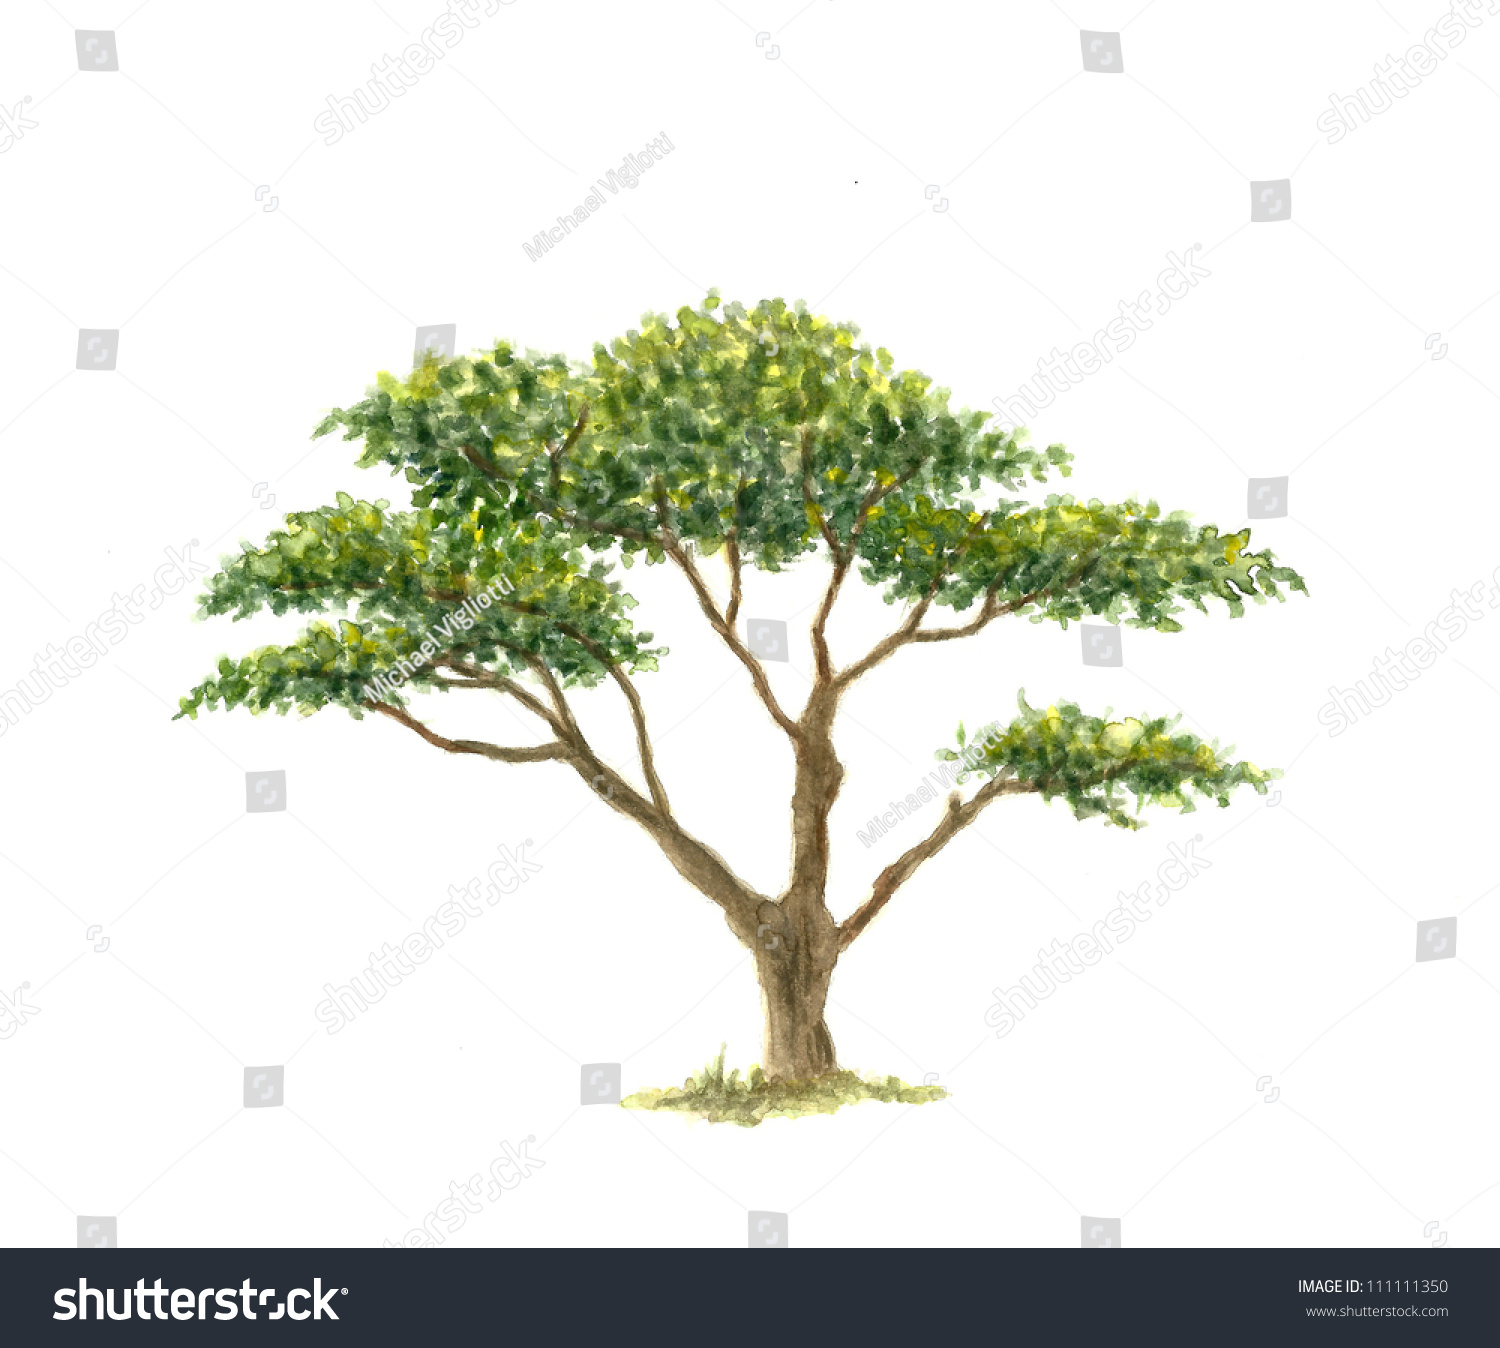 acacia tree clipart - photo #23